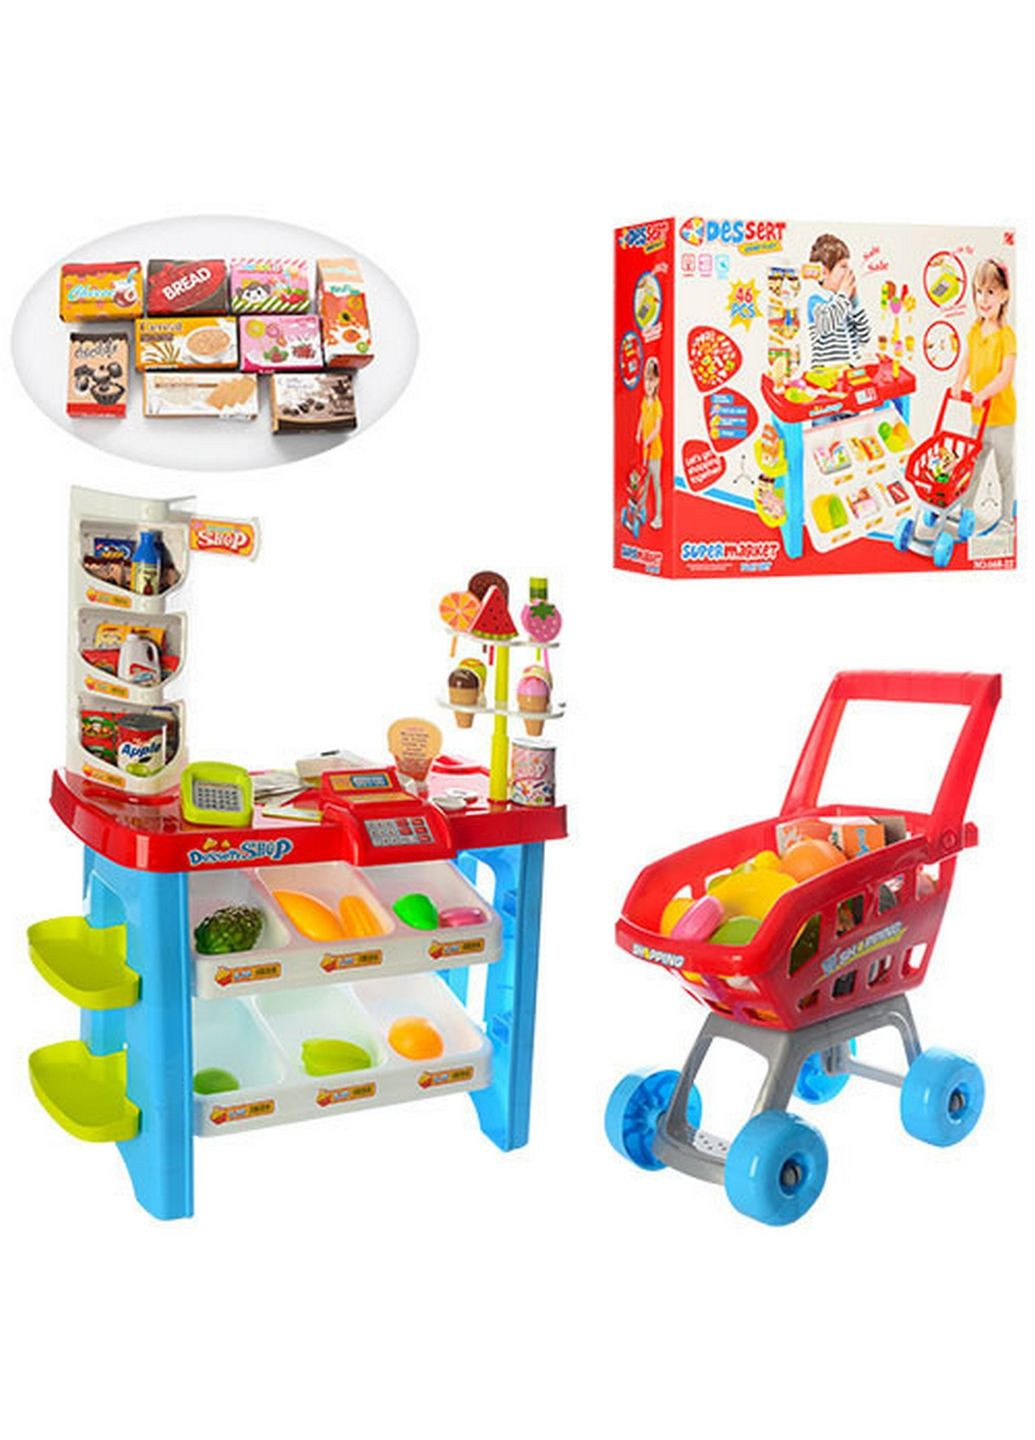 Детский игровой набор магазин с корзинкой продуктов Metr+ (282590810)